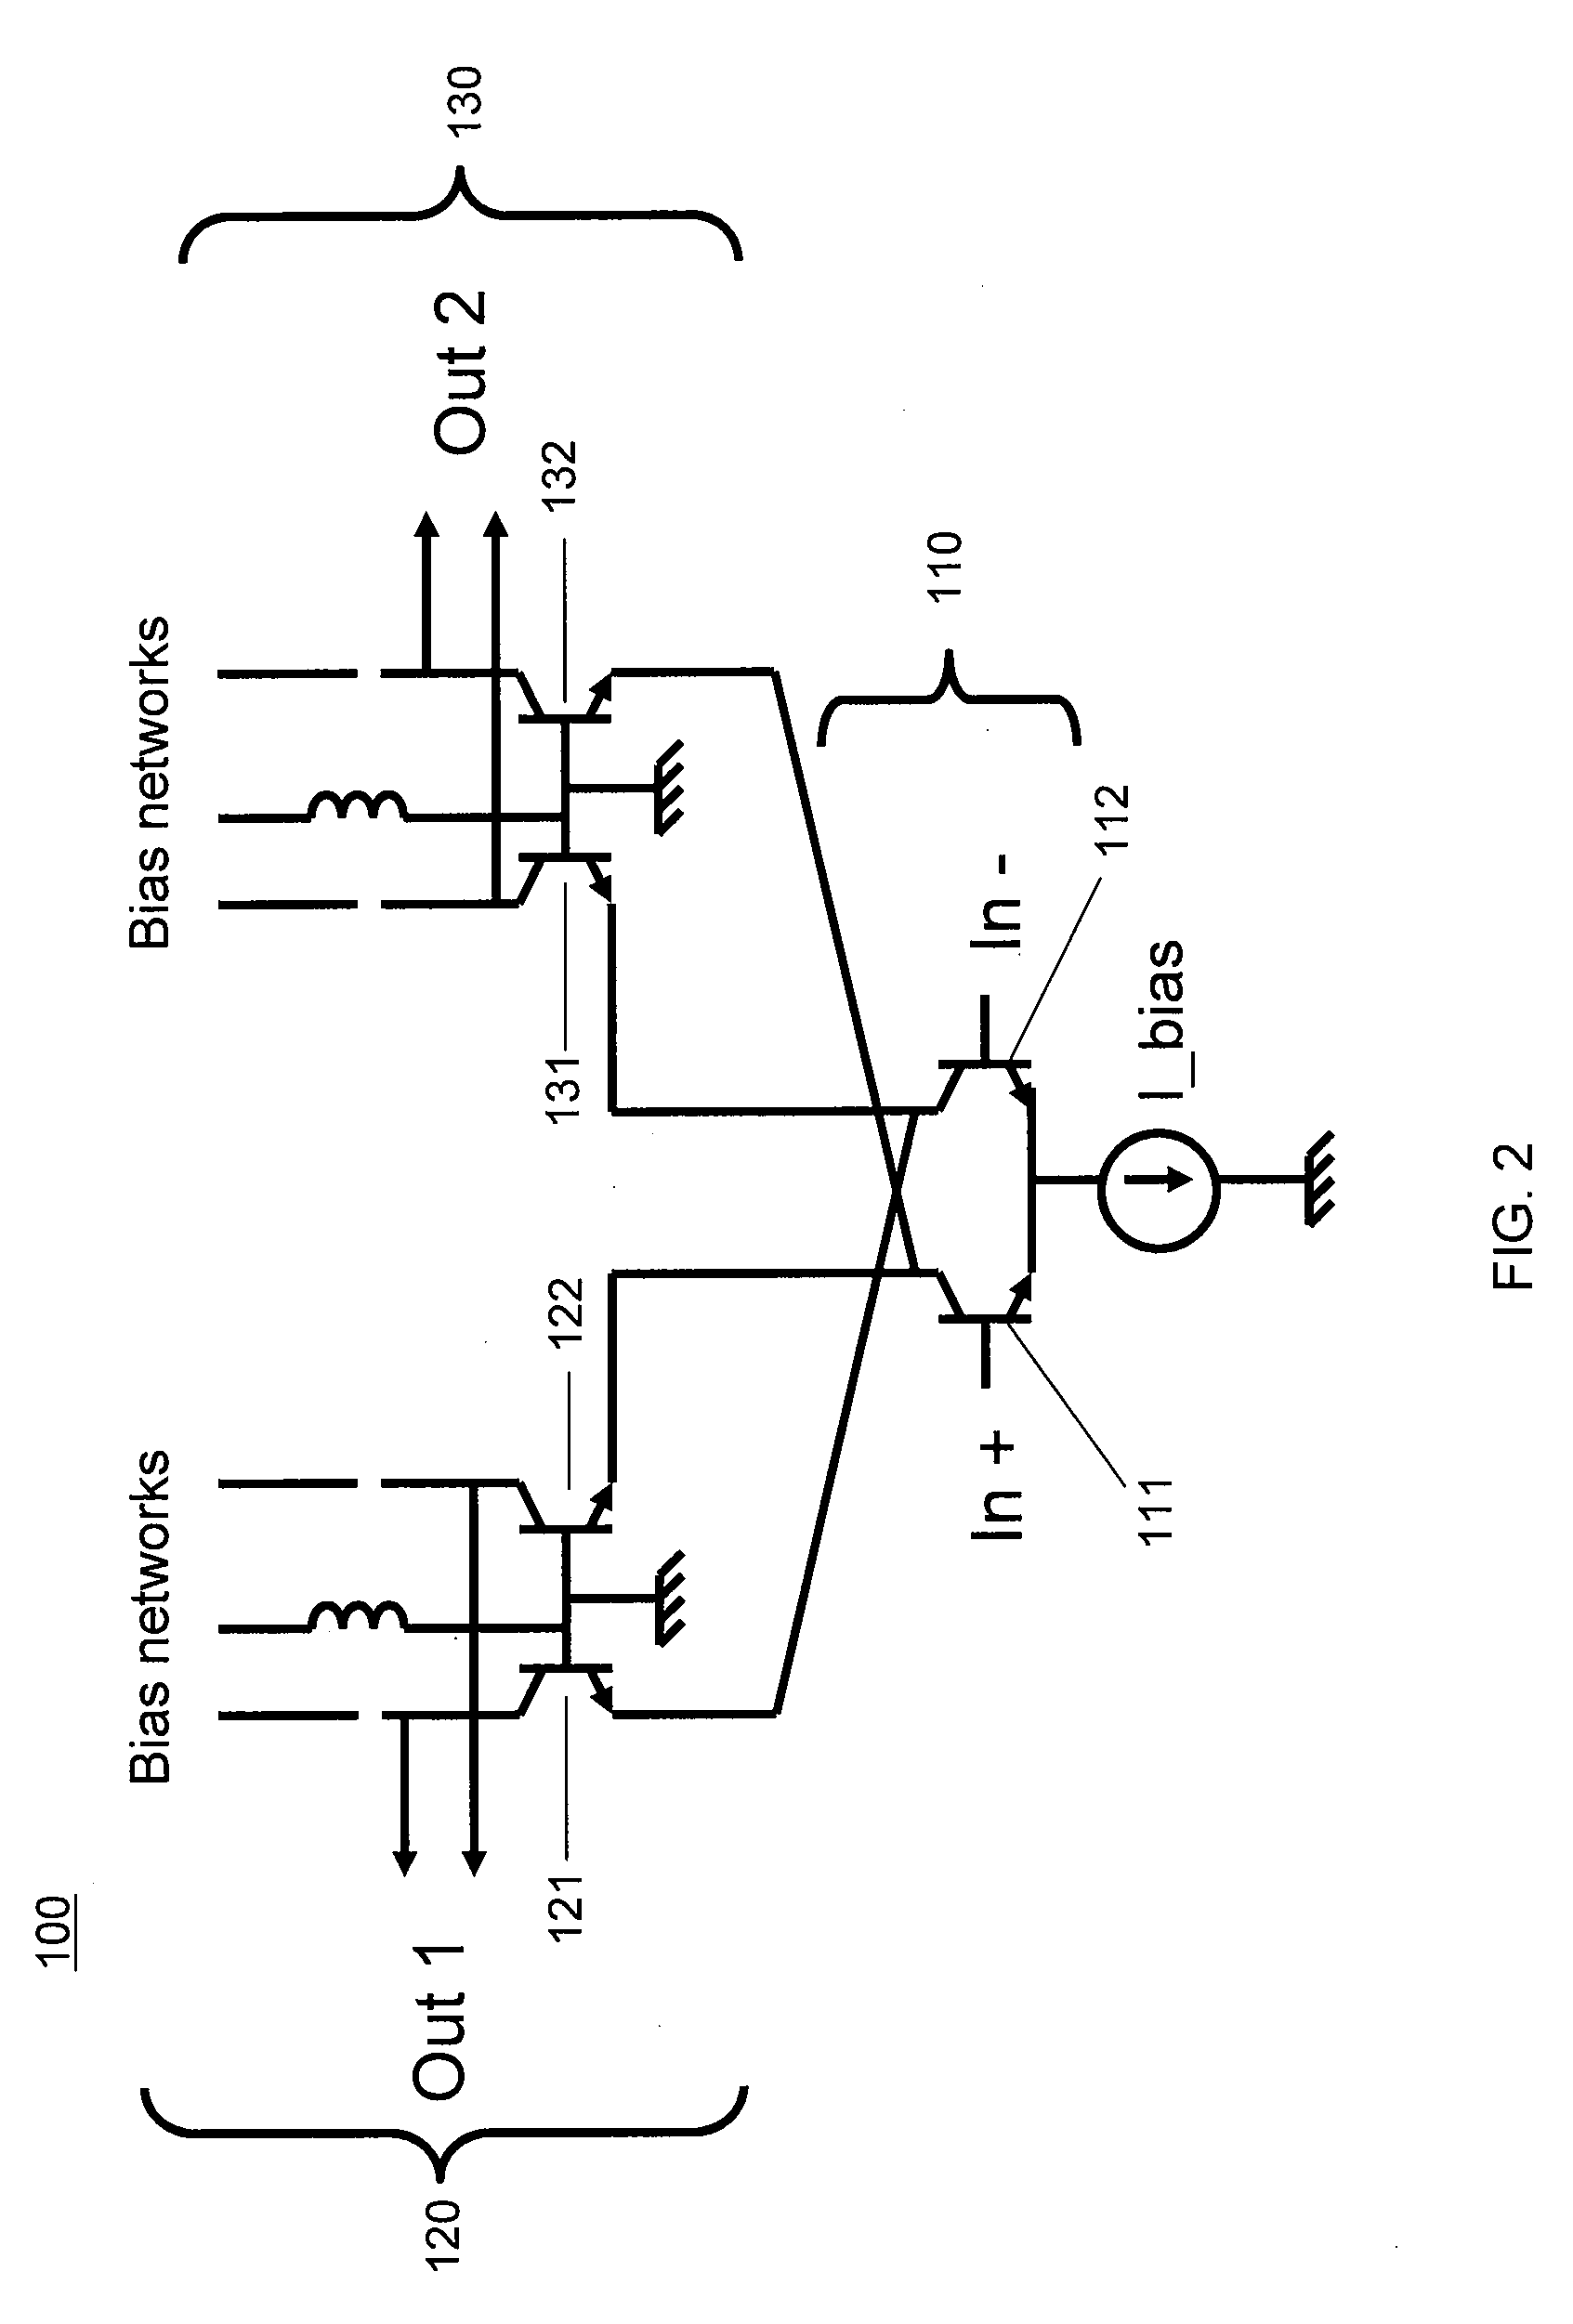 Preselector amplifier